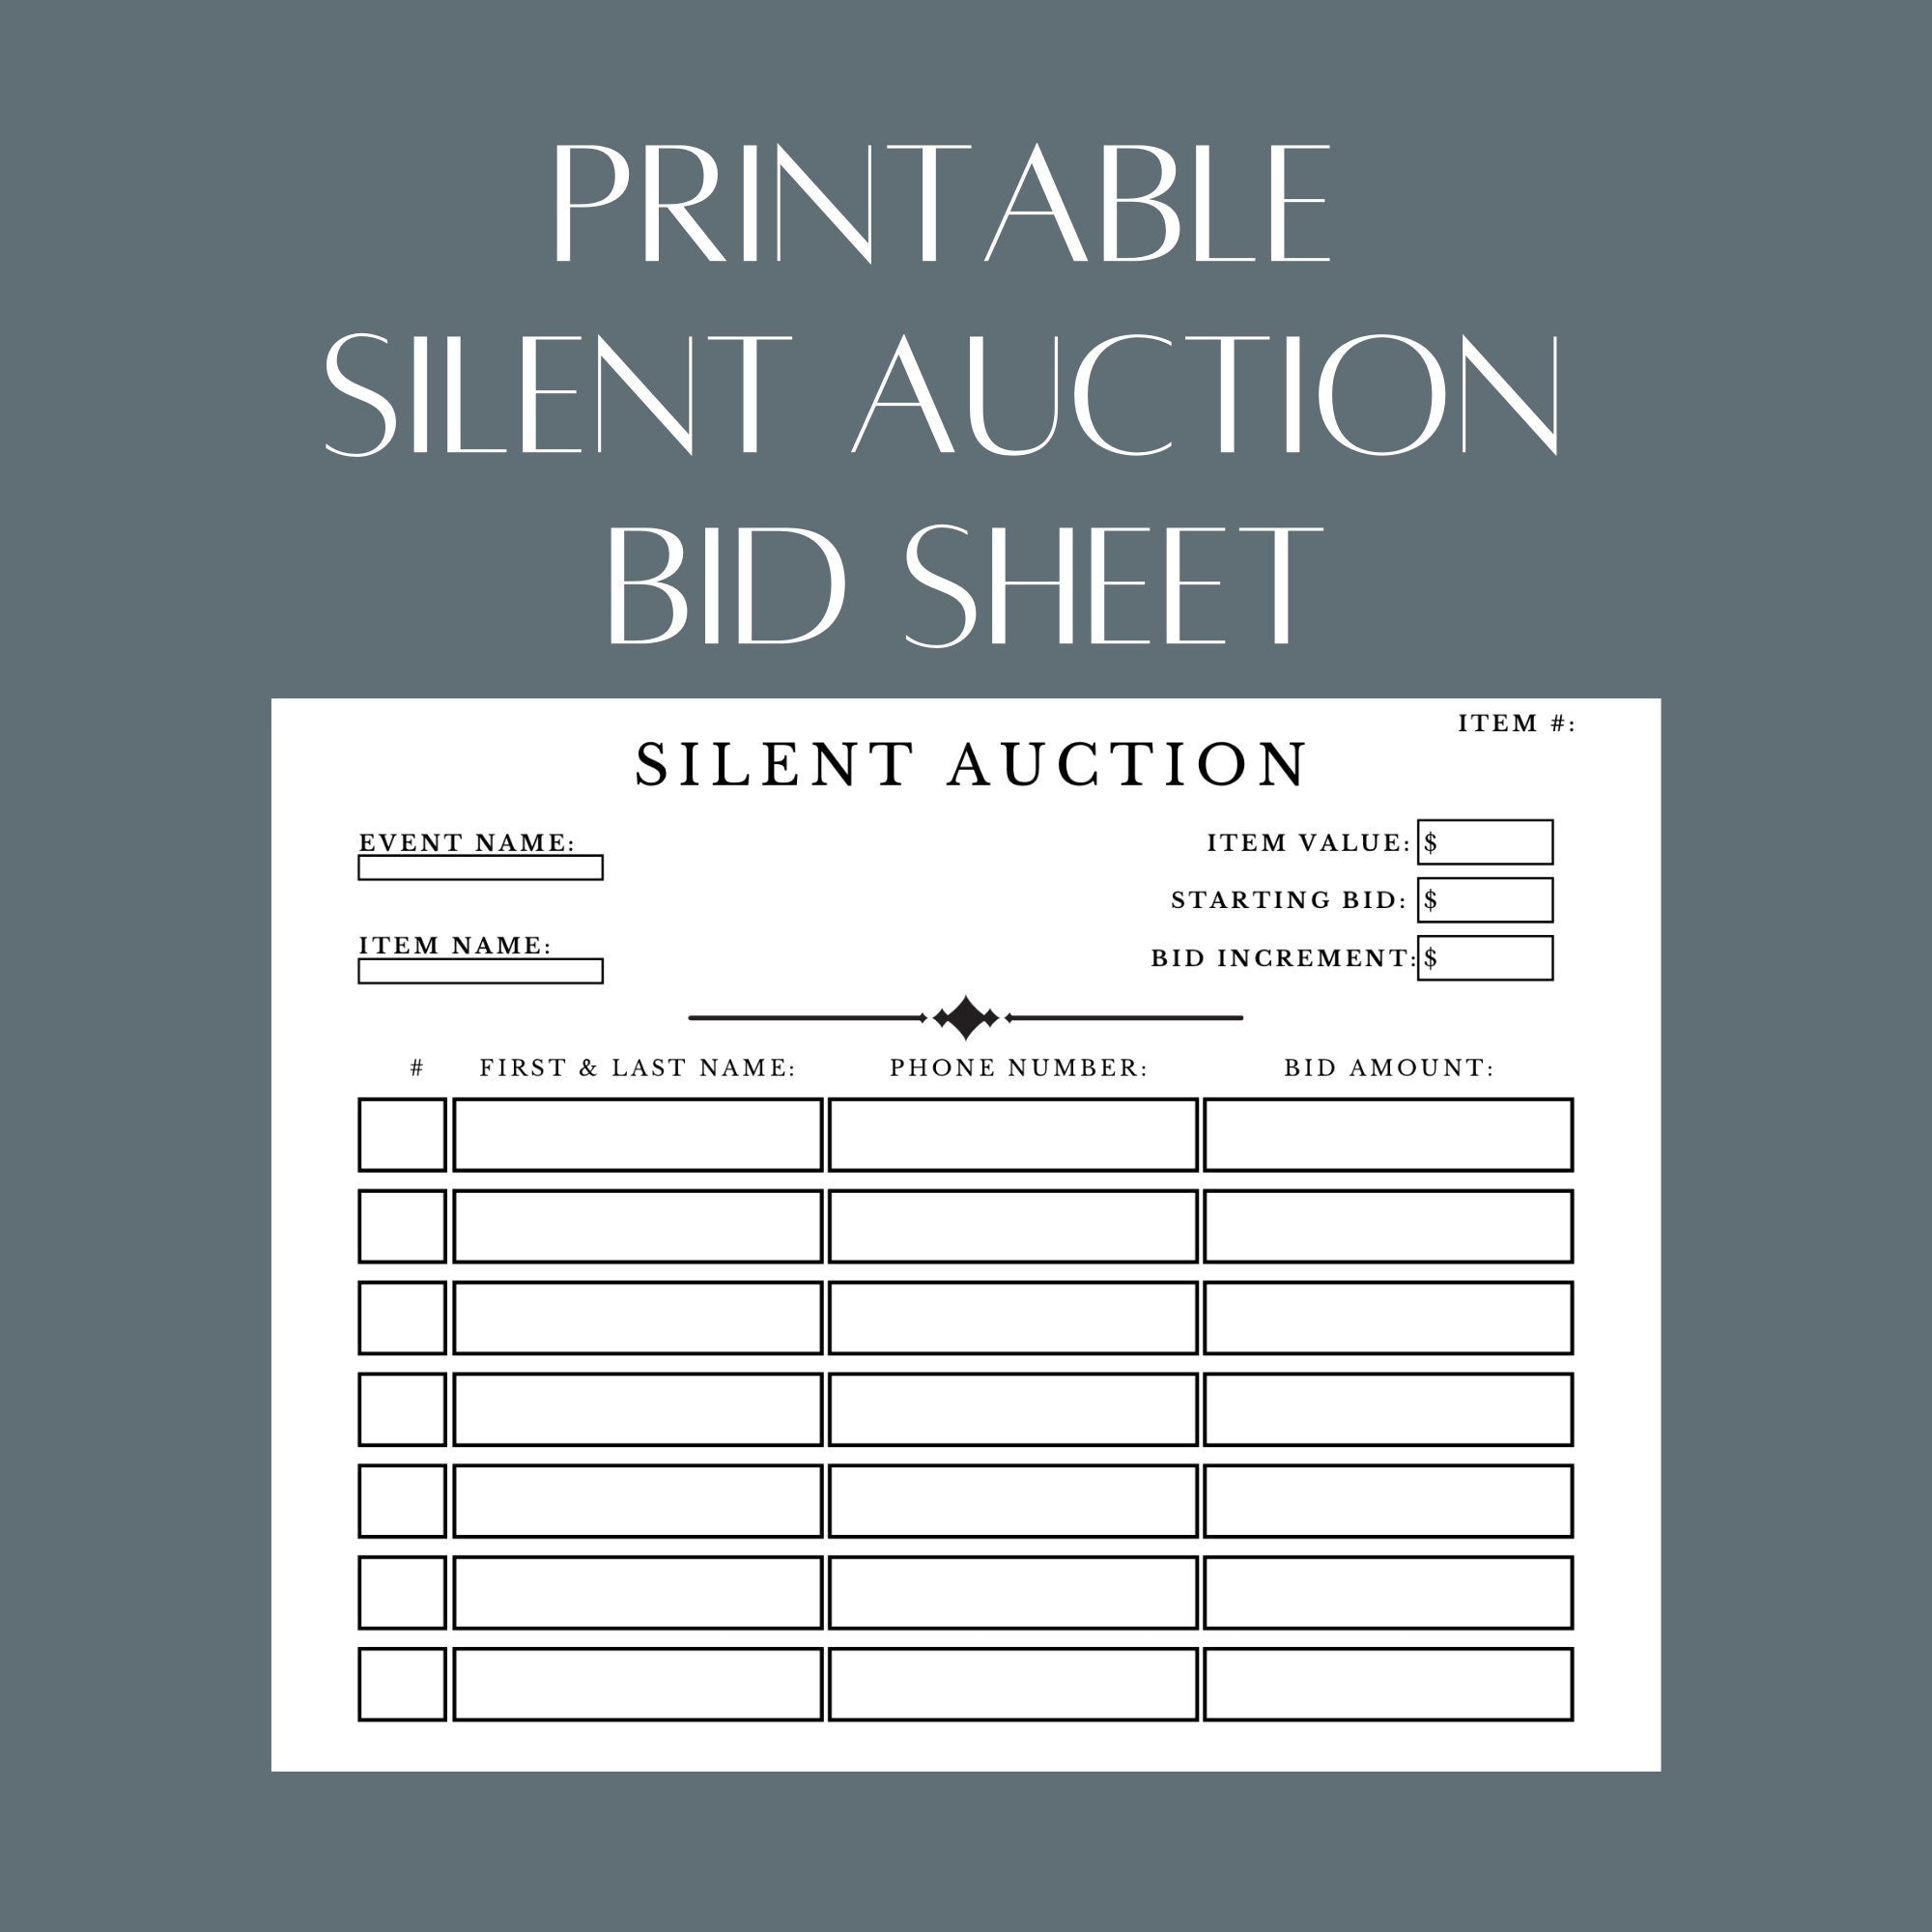 ude af drift Officer overdrive Printable Silent Auction Bid Sheet PDF File Simply - Etsy Finland